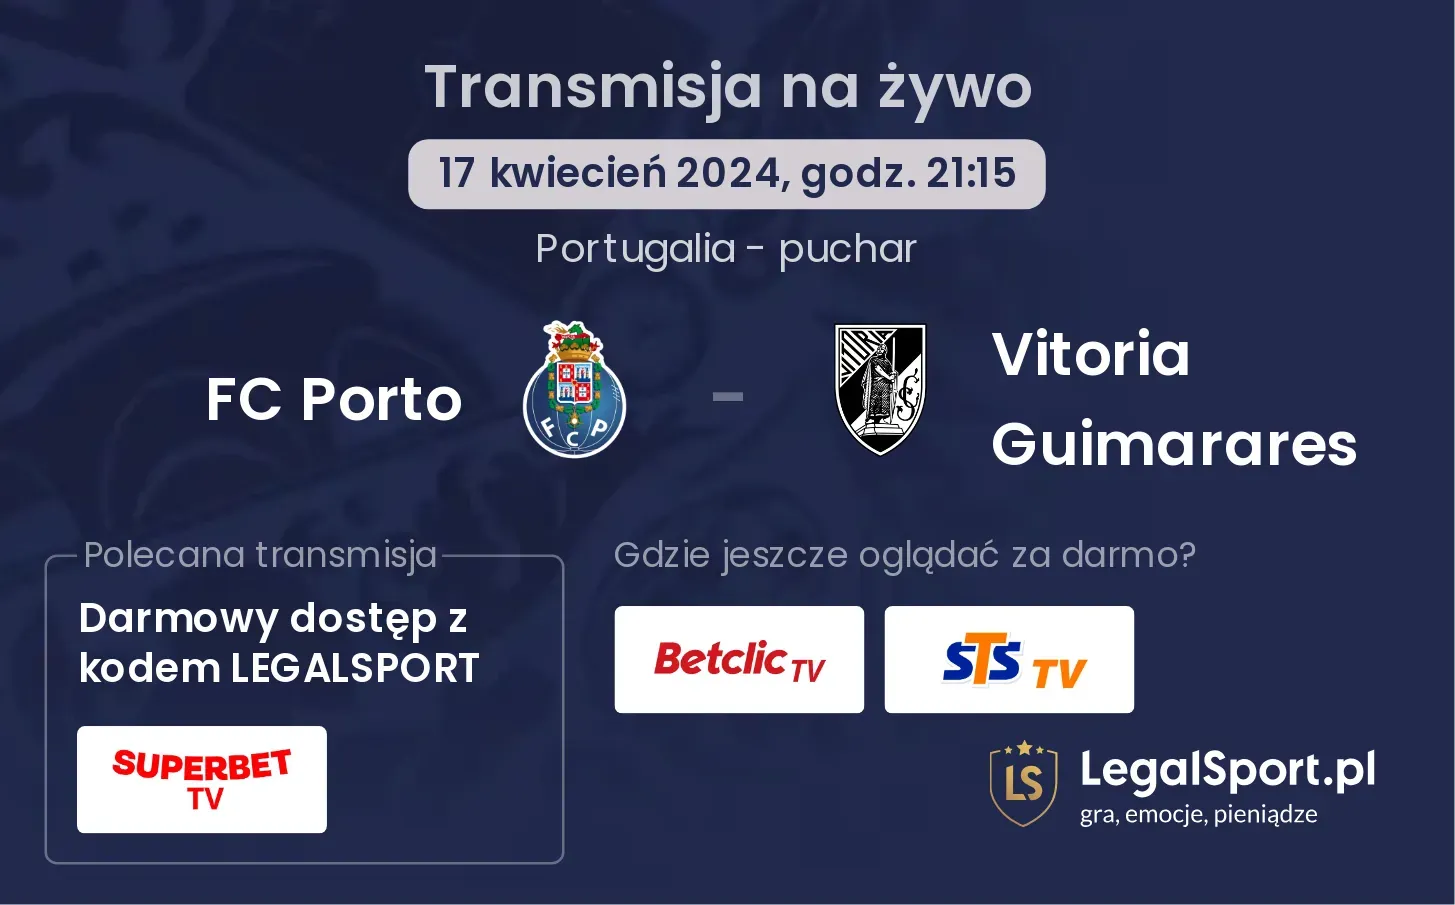 FC Porto - Vitoria Guimarares transmisja na żywo